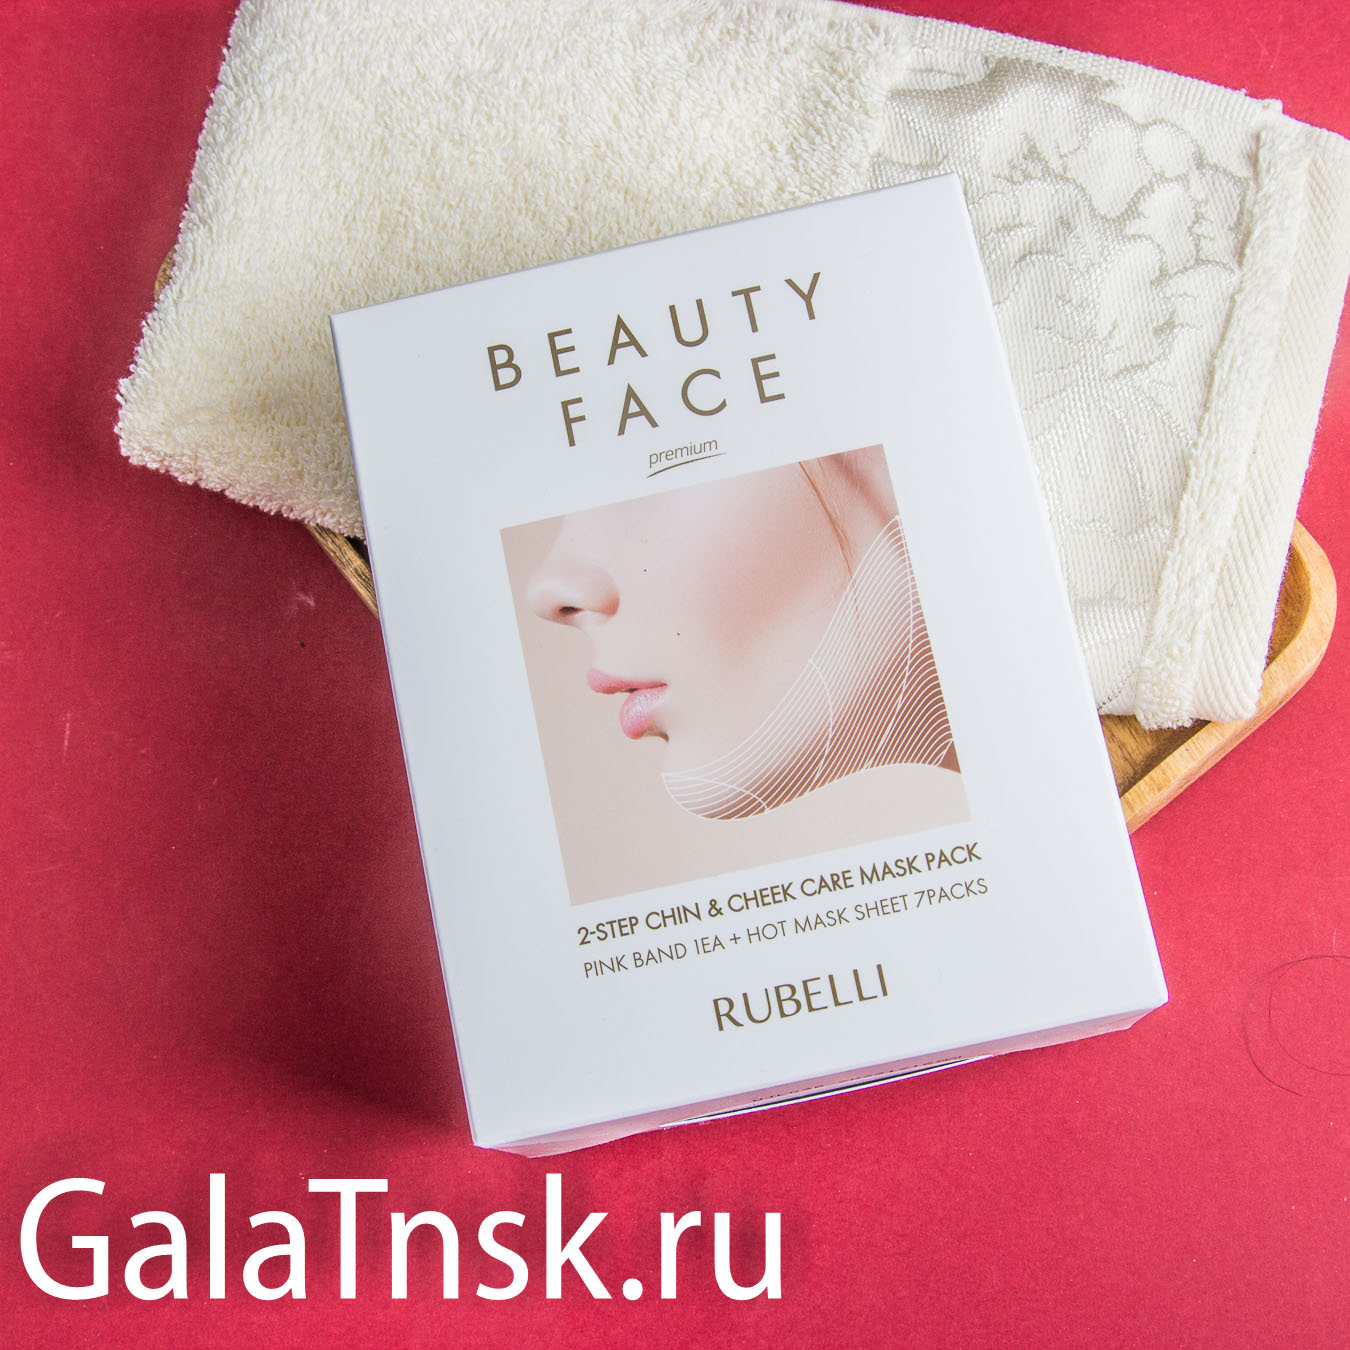 RUBELLI Набор для подтяжки контура лица БАНДАЖ+ТКАНЕВАЯ МАСКА Beauty Face 2-Step Chin&Cheek Care Ma